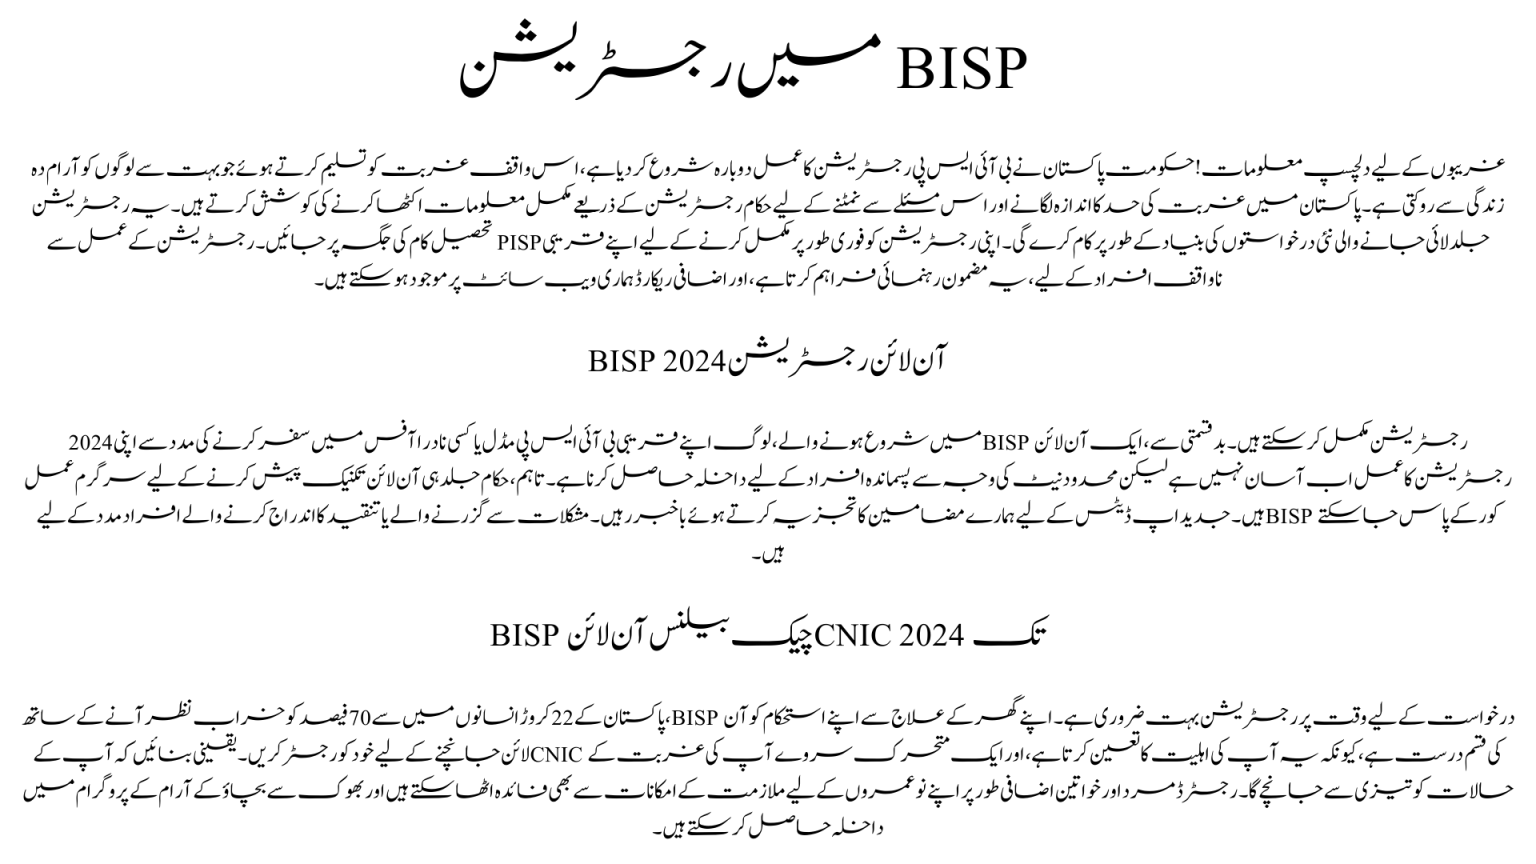 Registration in BISP